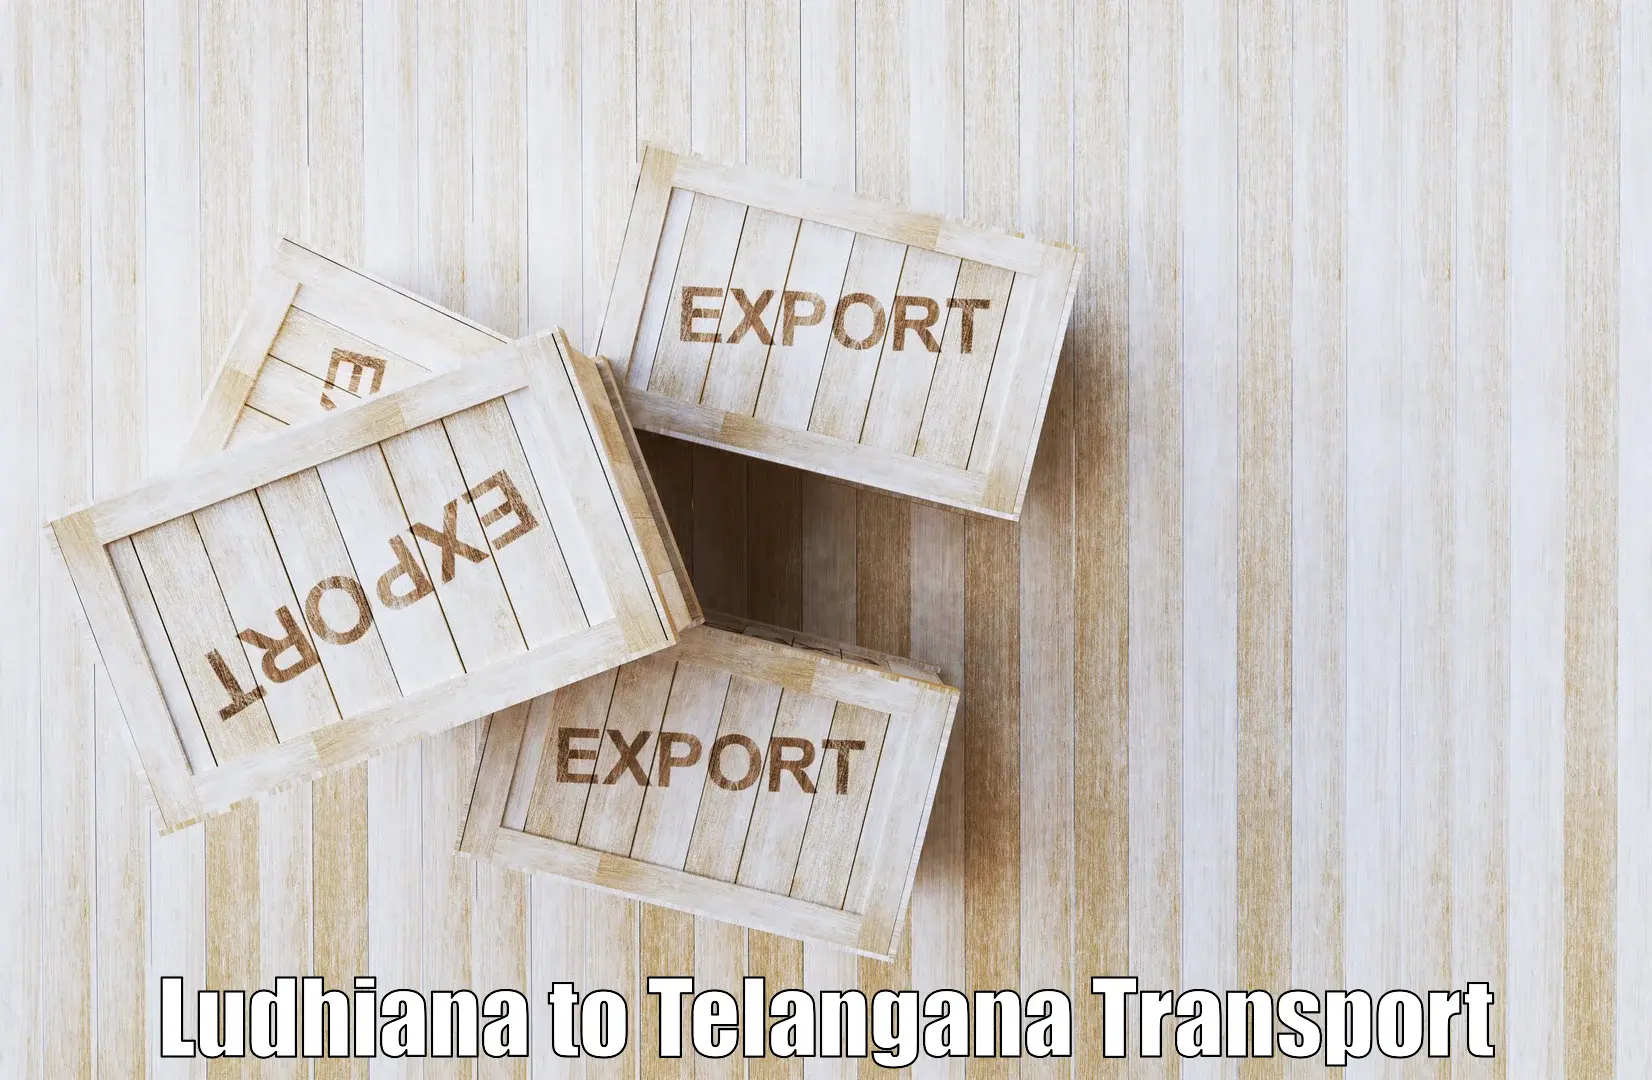 Nearest transport service Ludhiana to Wanaparthy